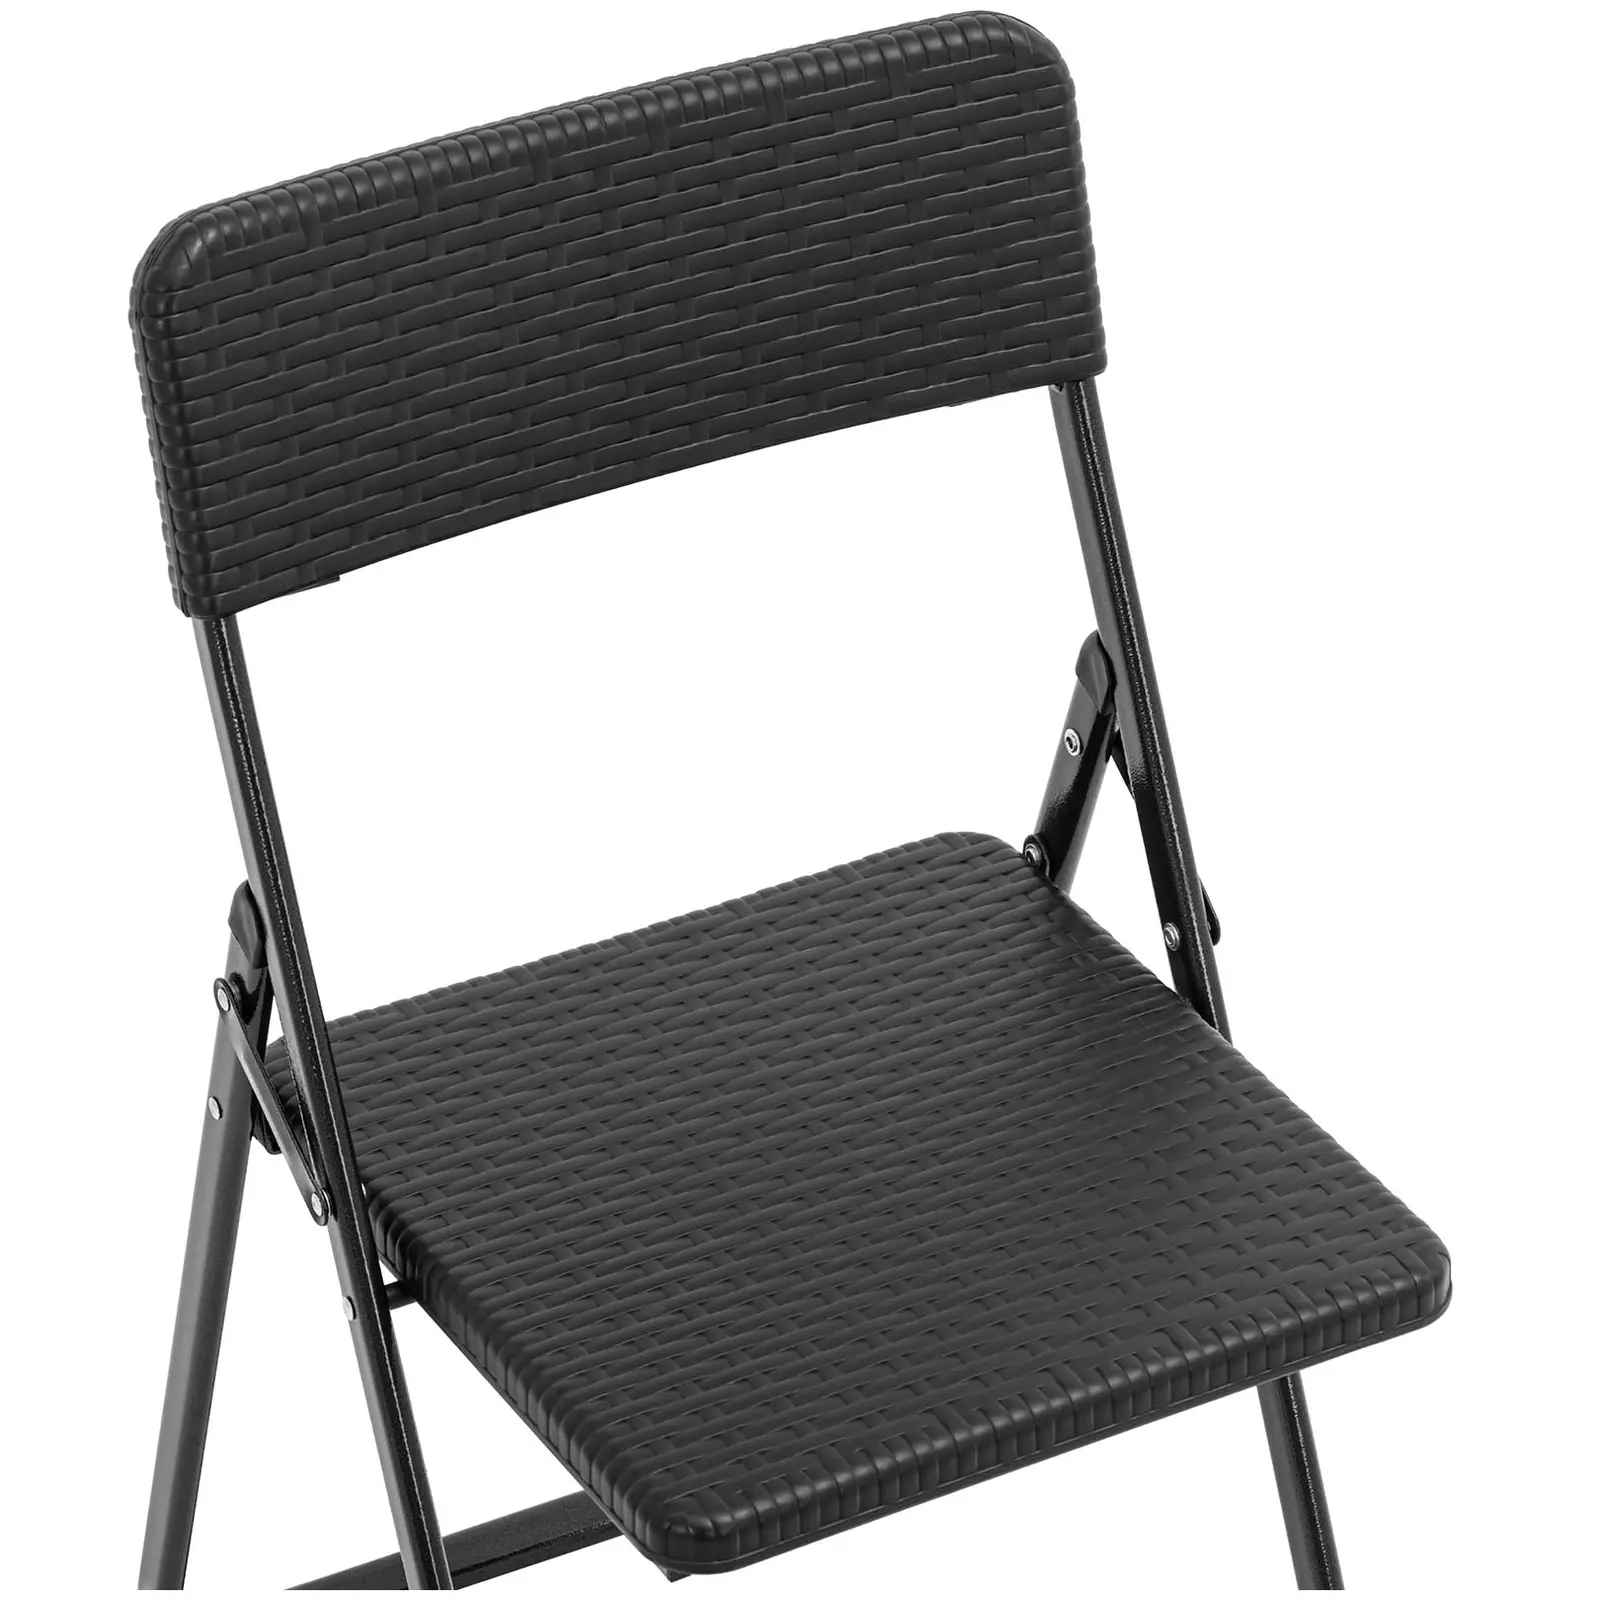 Kerti bútor szett - asztal 2 székkel - acél / HDPE - összecsukható